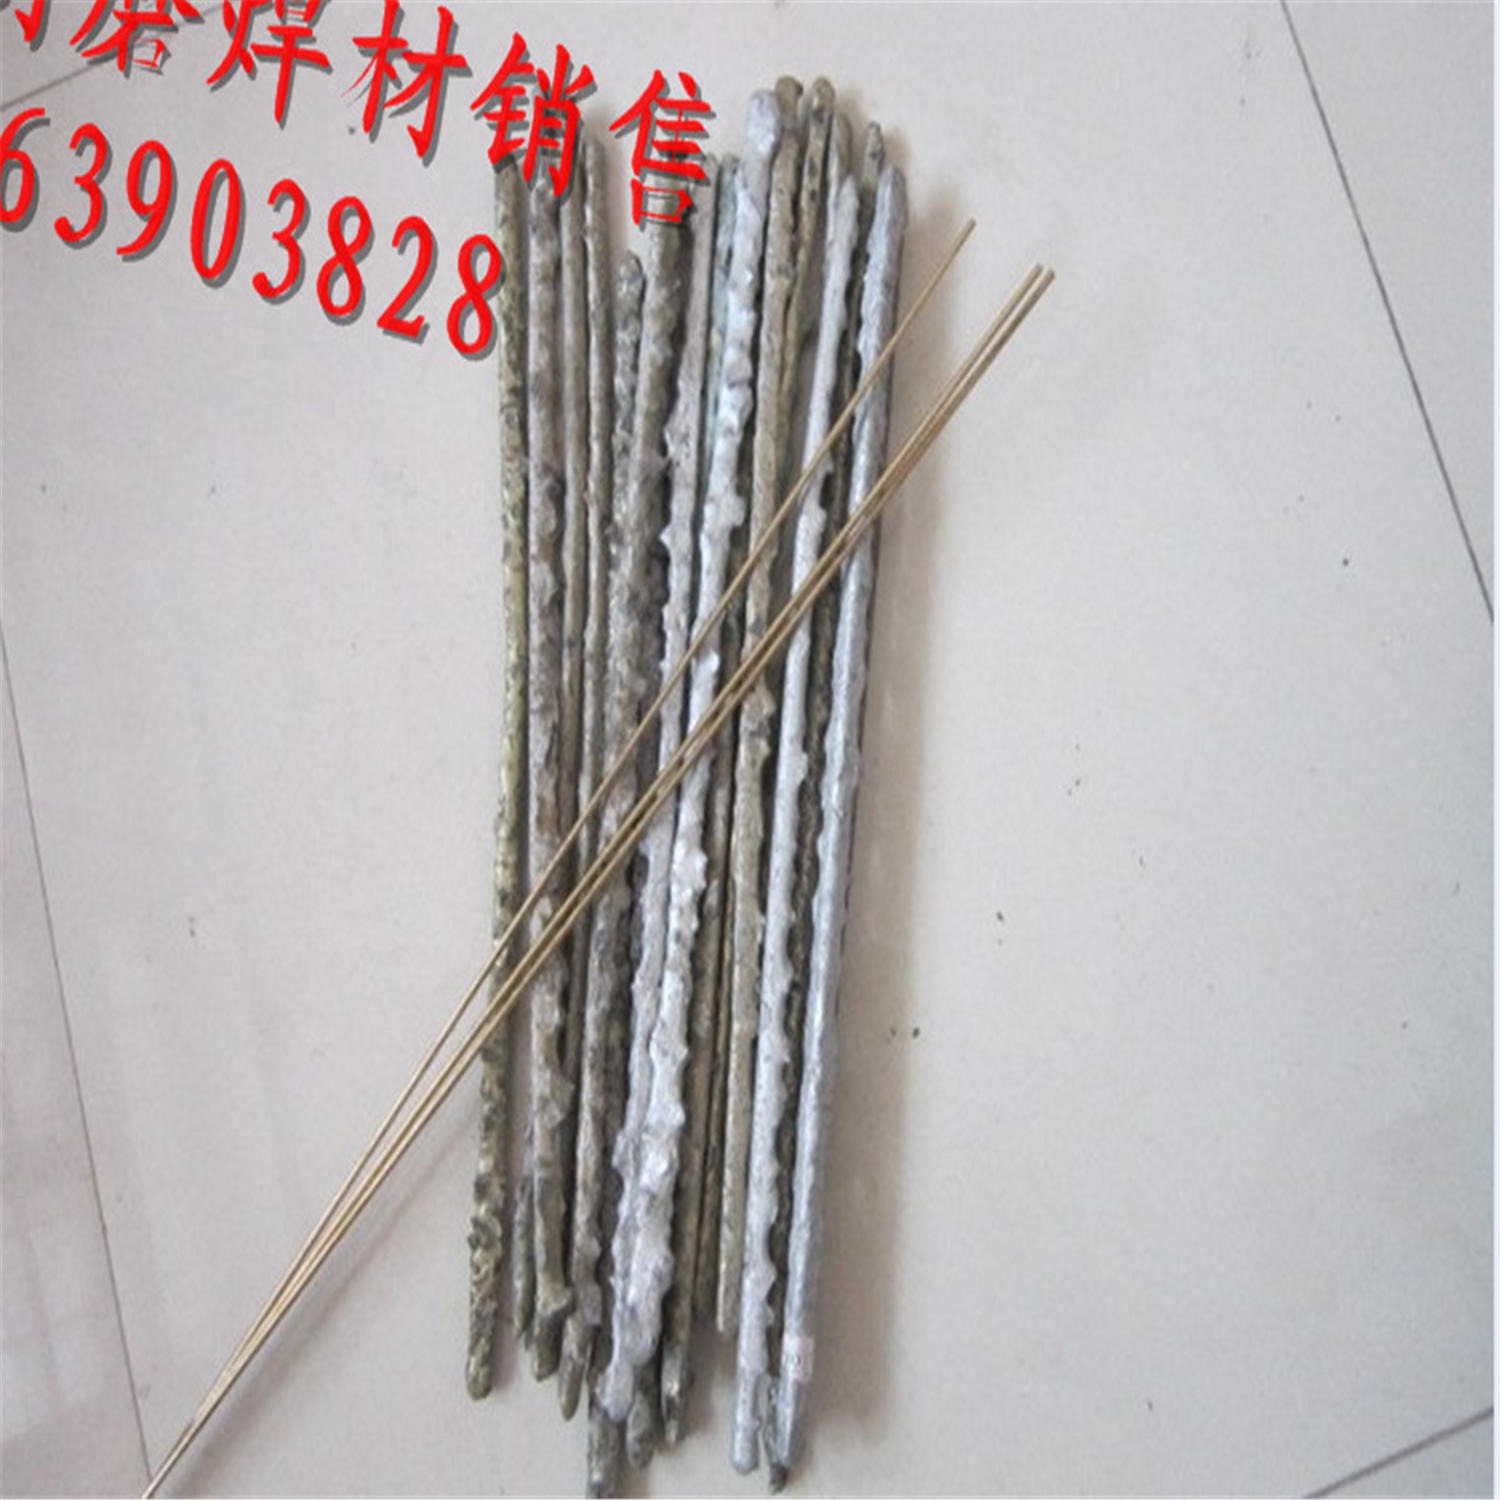 高硬度YD-30目硬质合金气焊条 硬质合金气焊条